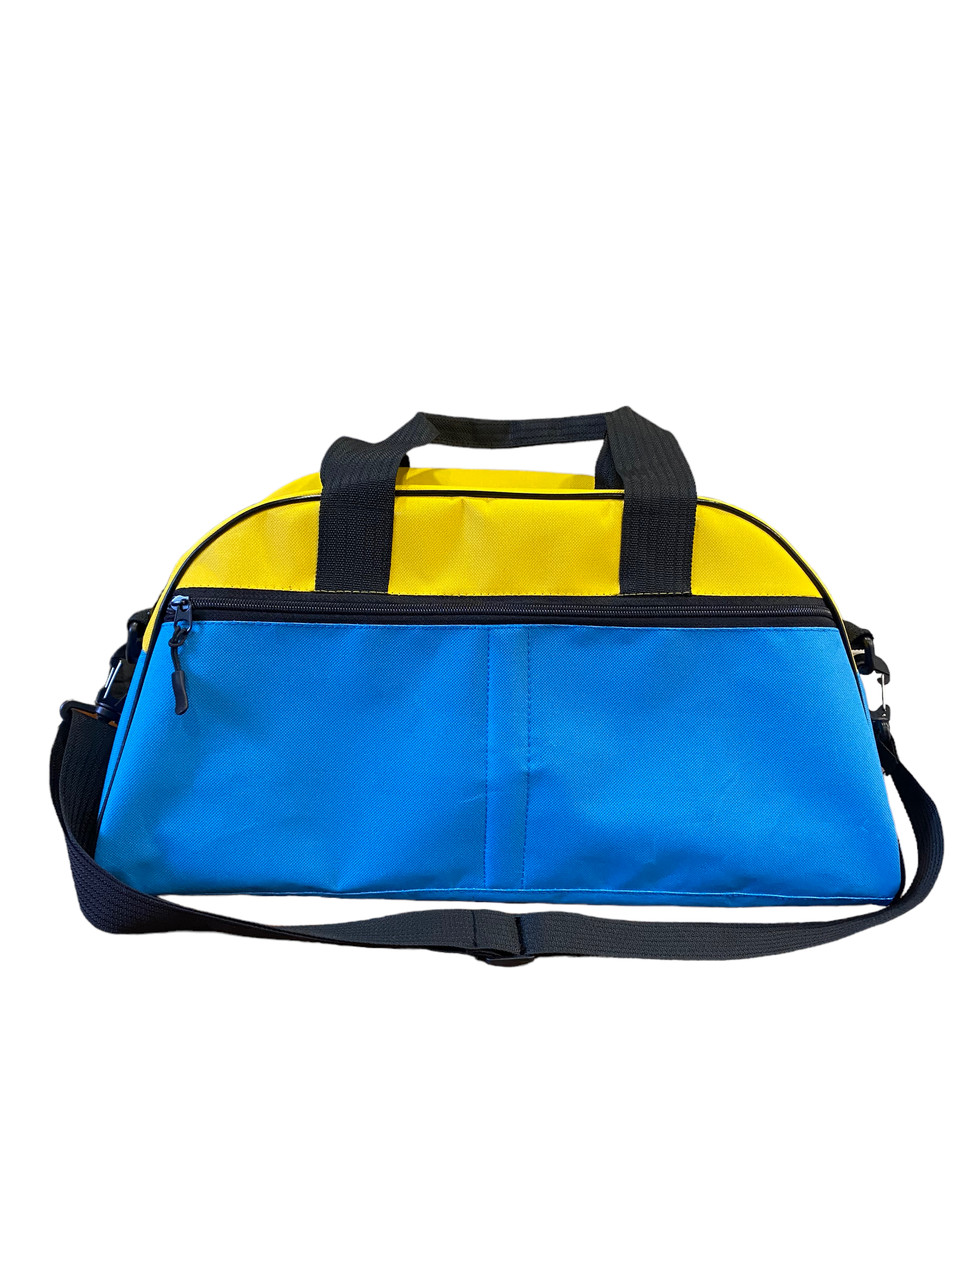 Спортивна сумка Run VS Thermal Eco Bag жовтого-синього кольору, фото 1